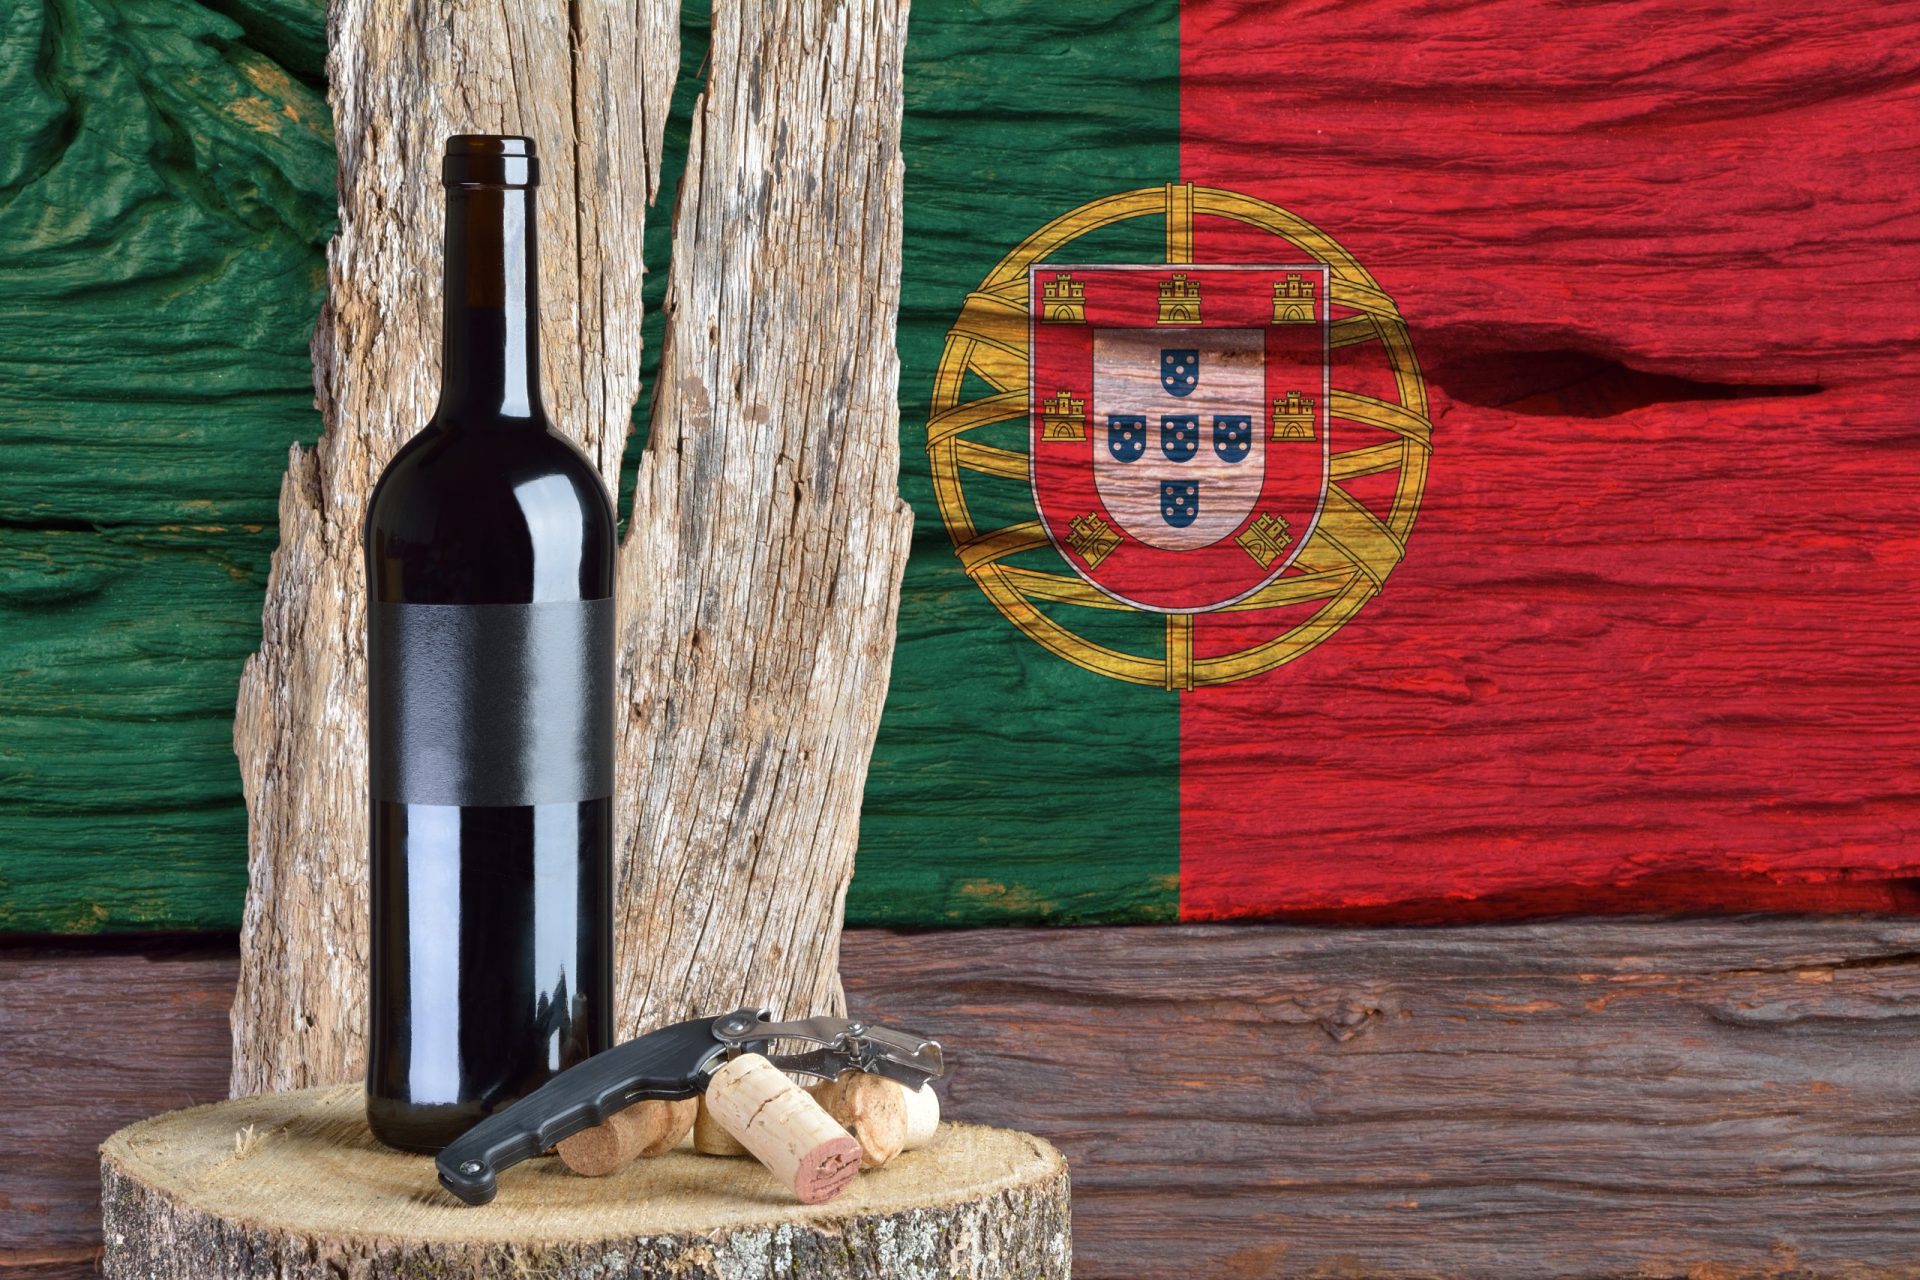 China. 35 vinhos portugueses arrecadam duplo ouro em concurso